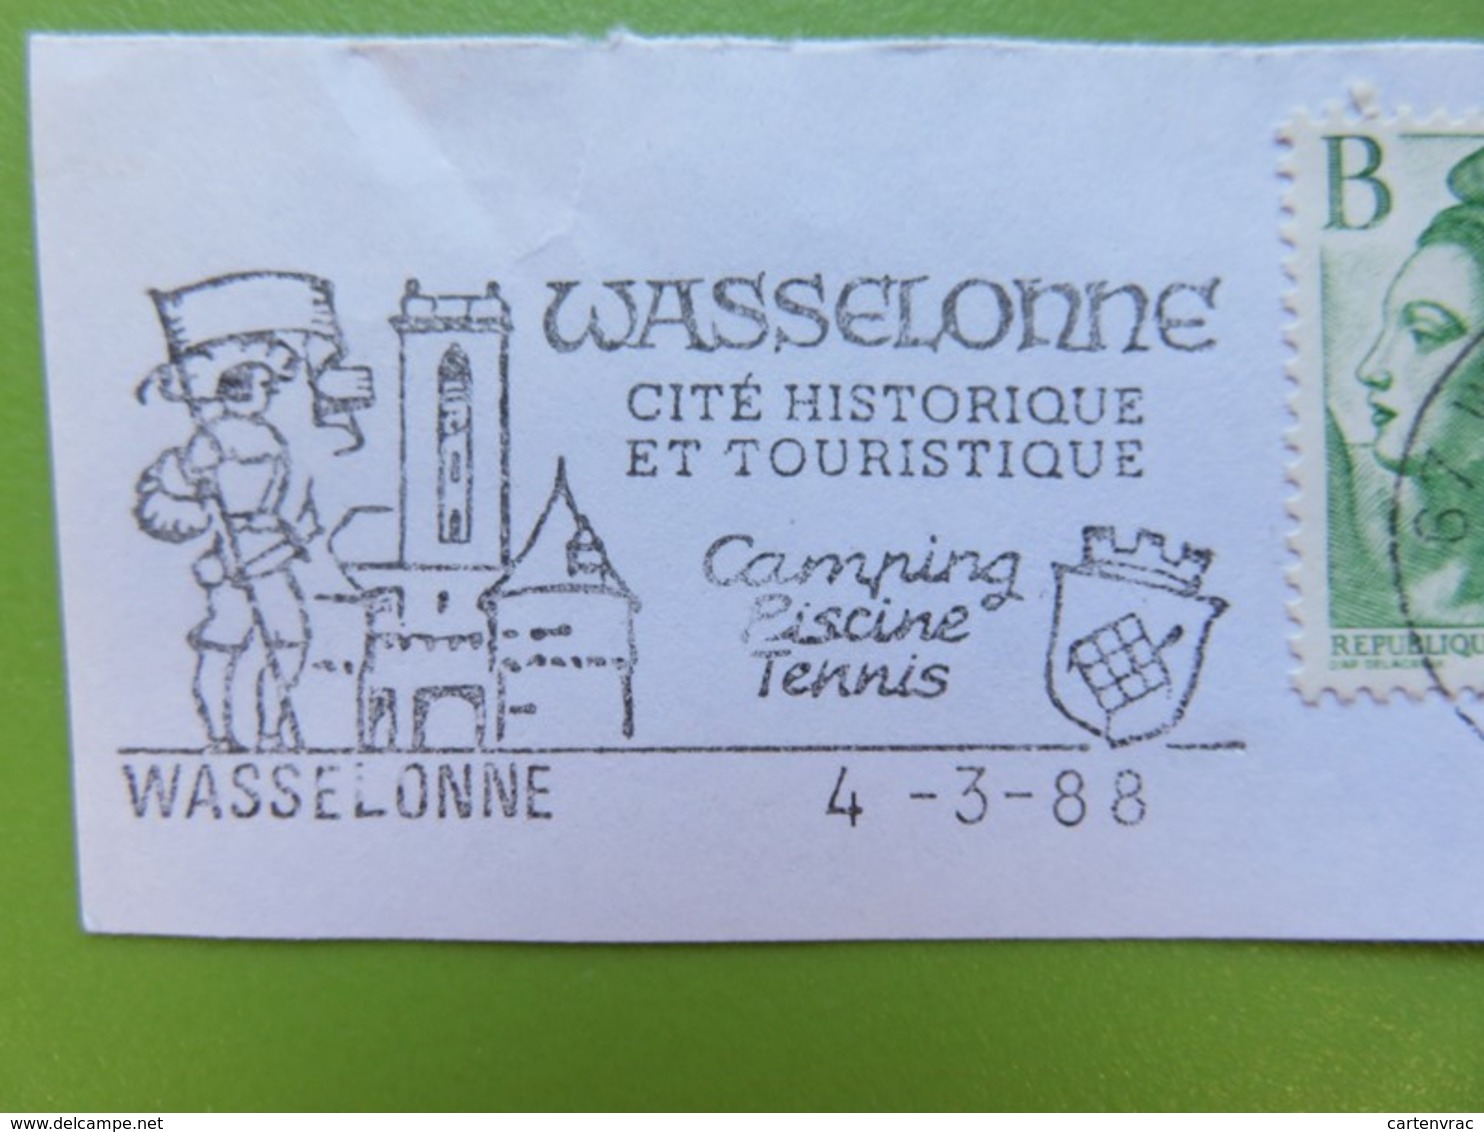 Flamme - Wasselonne (Bas-Rhin) - Cité Historique - Cachet 1988 - Timbres YT N° 2483 Et 2376 - Mechanical Postmarks (Advertisement)